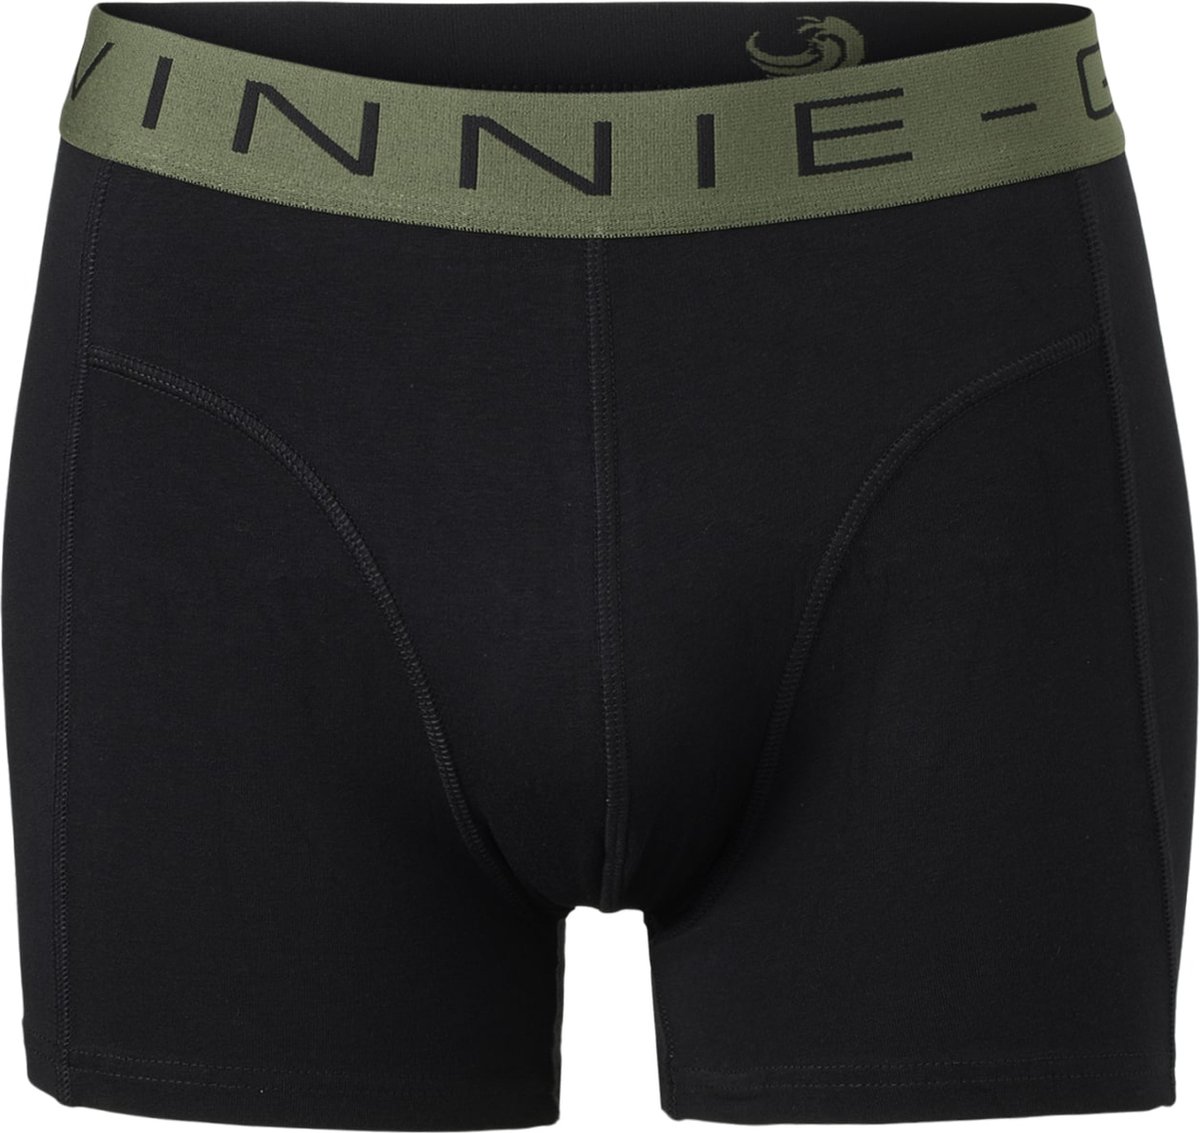 Vinnie-G Boxershorts 2-pack Black/Forest Green Combo - Maat L - Heren Onderbroeken Zwart/Donkergroen - Geen irritante Labels - Katoen heren ondergoed